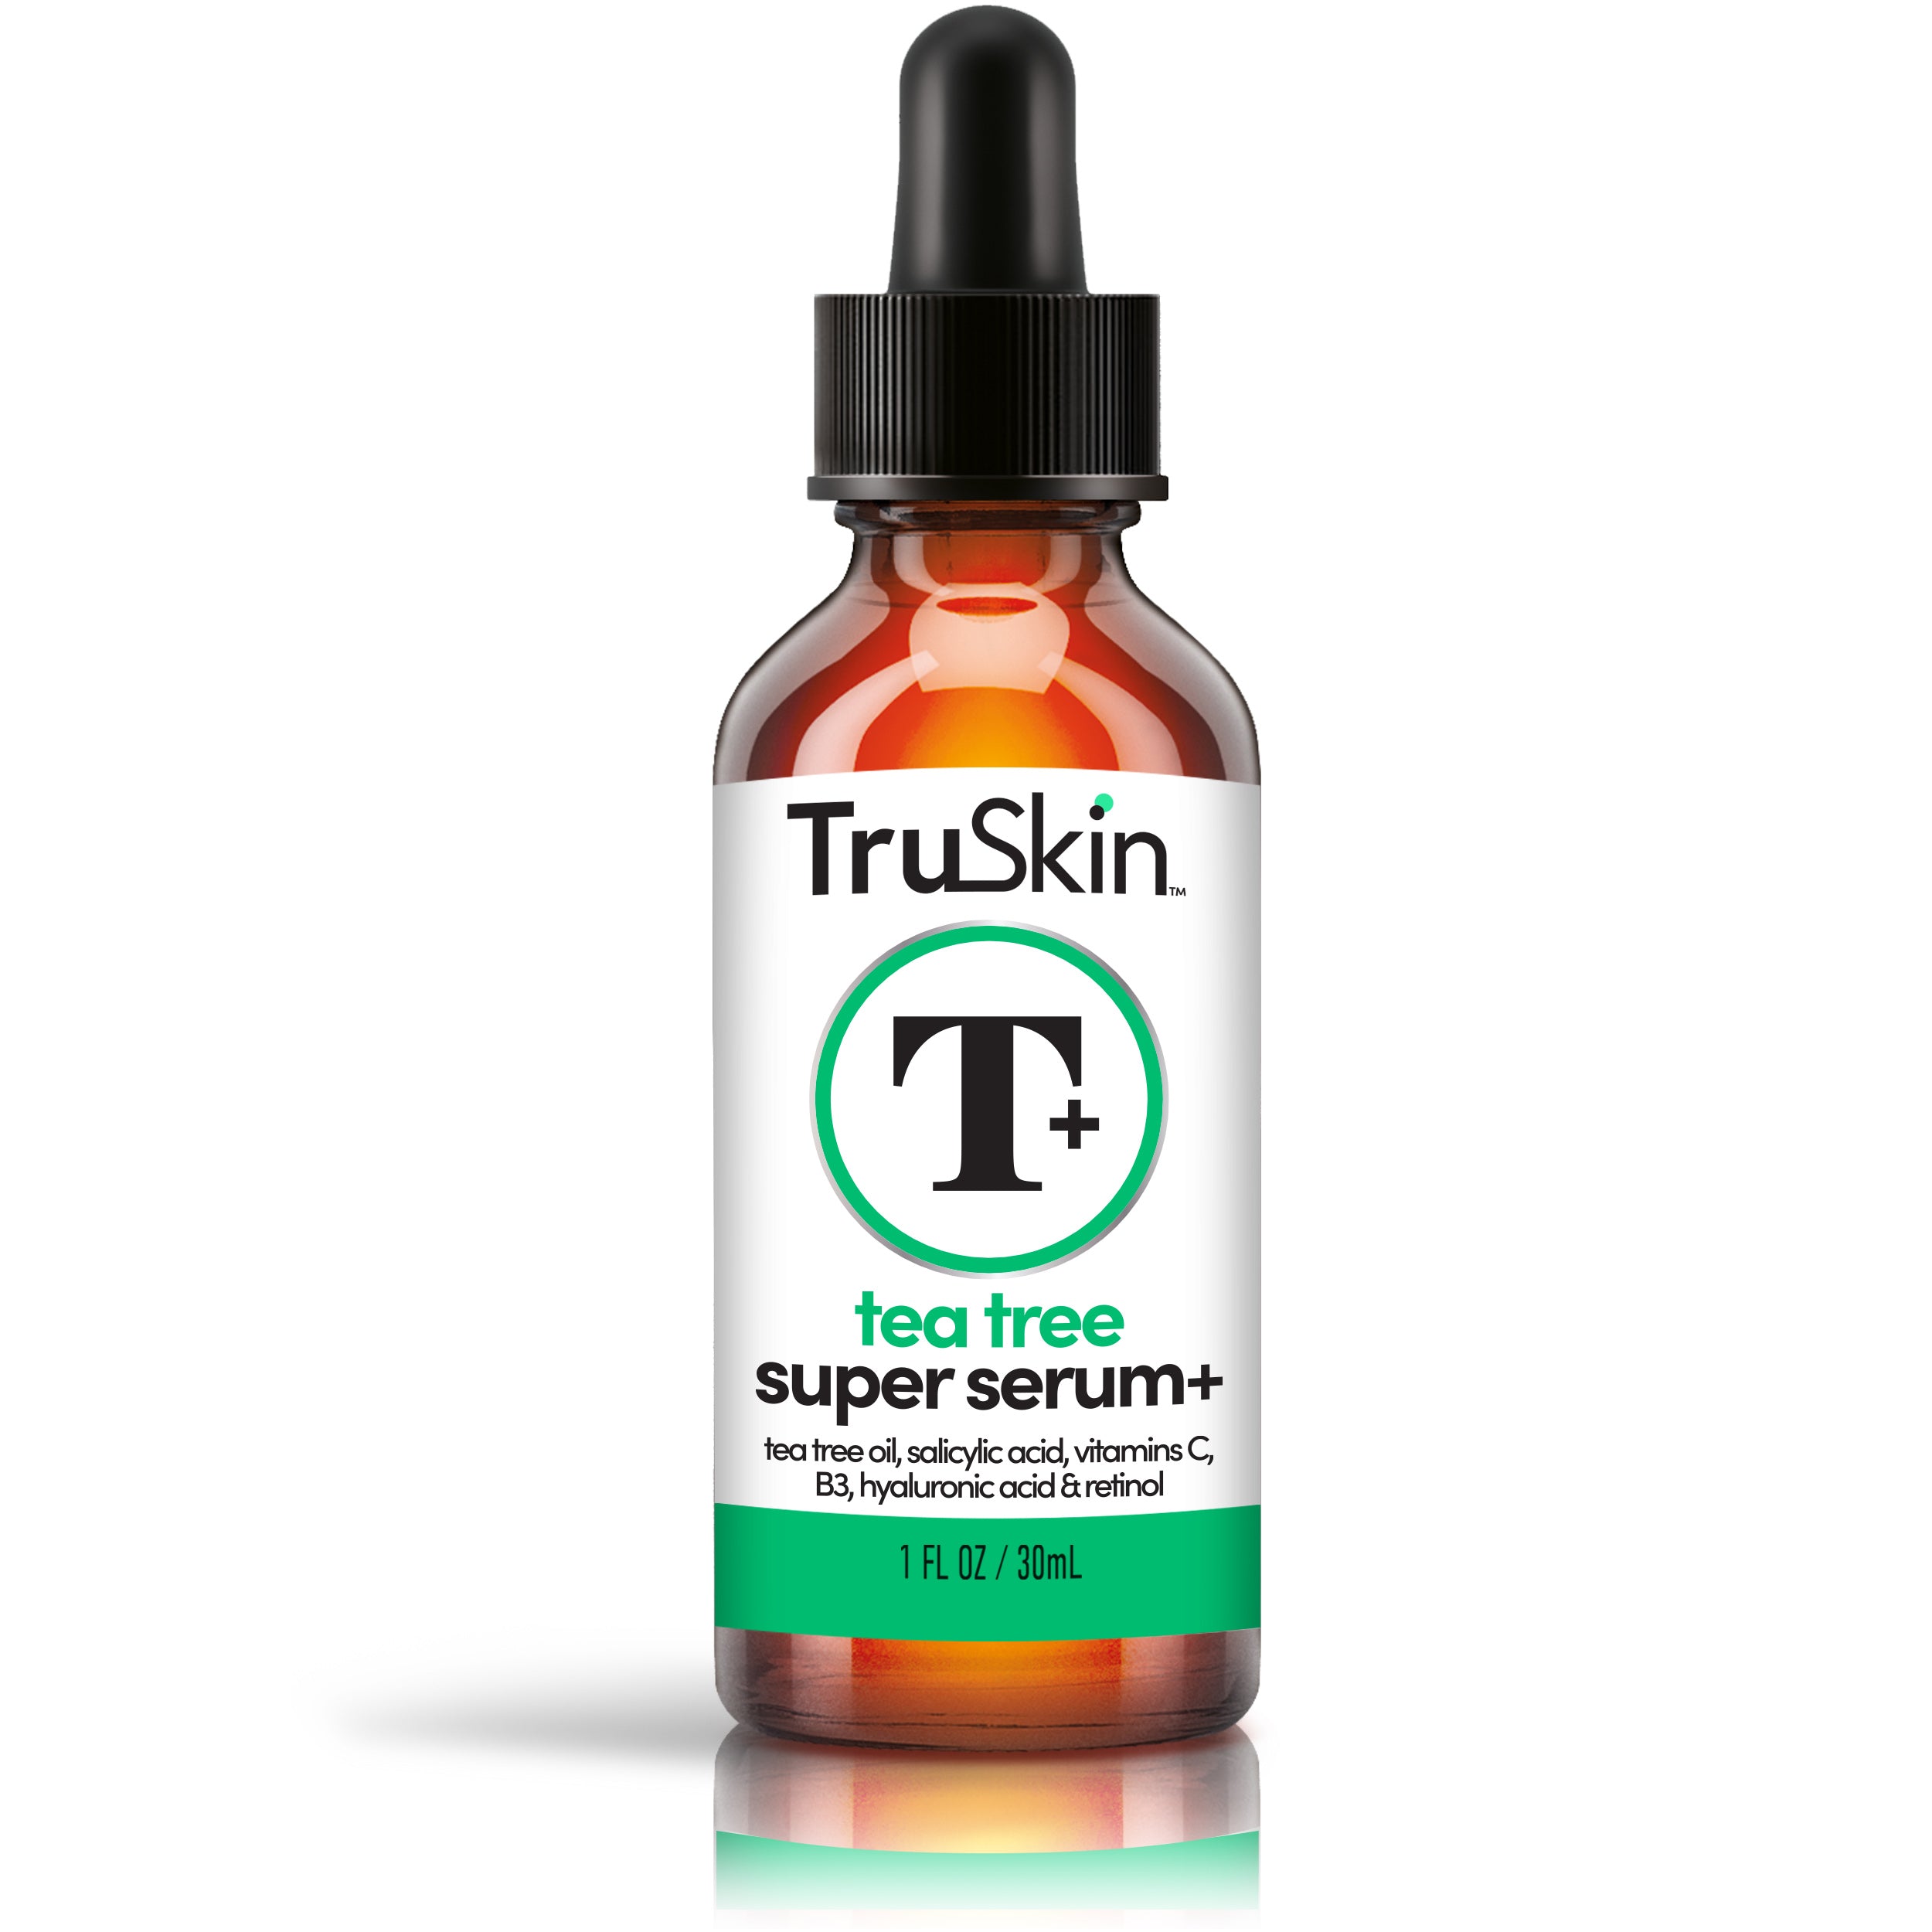 TruSkin Tea Tree Super Serum+